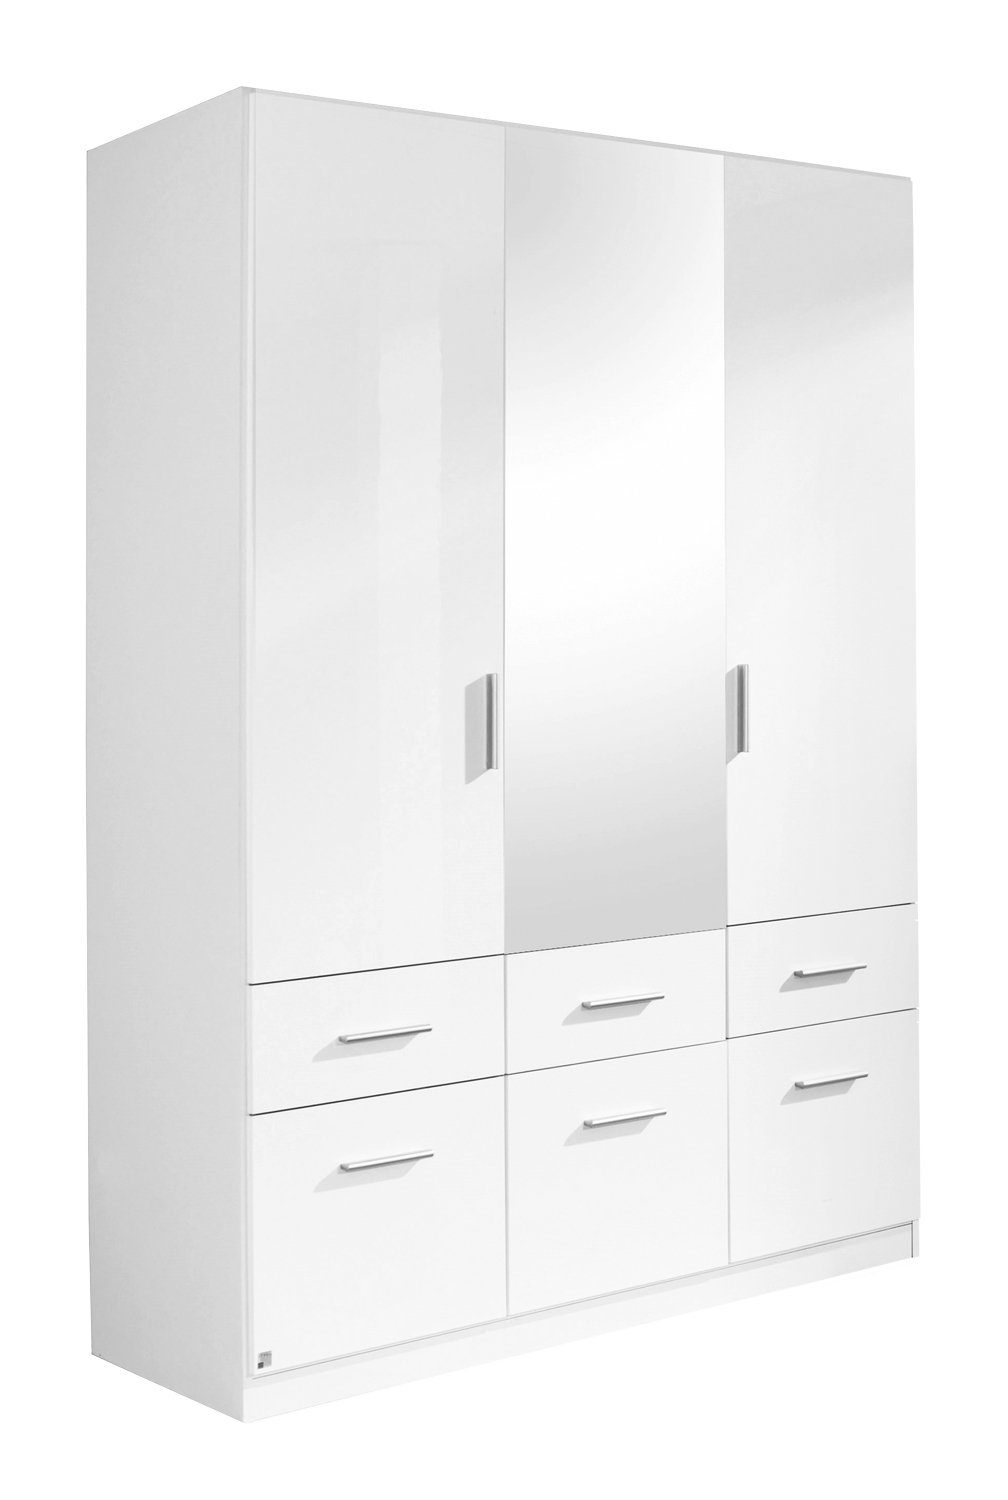 6 Spiegel B 3 136 x matt, Weiß 197 Weiß mit H cm CELLE, Schubladen, Hochglanz, Türen, Drehtürenschrank rauch cm,